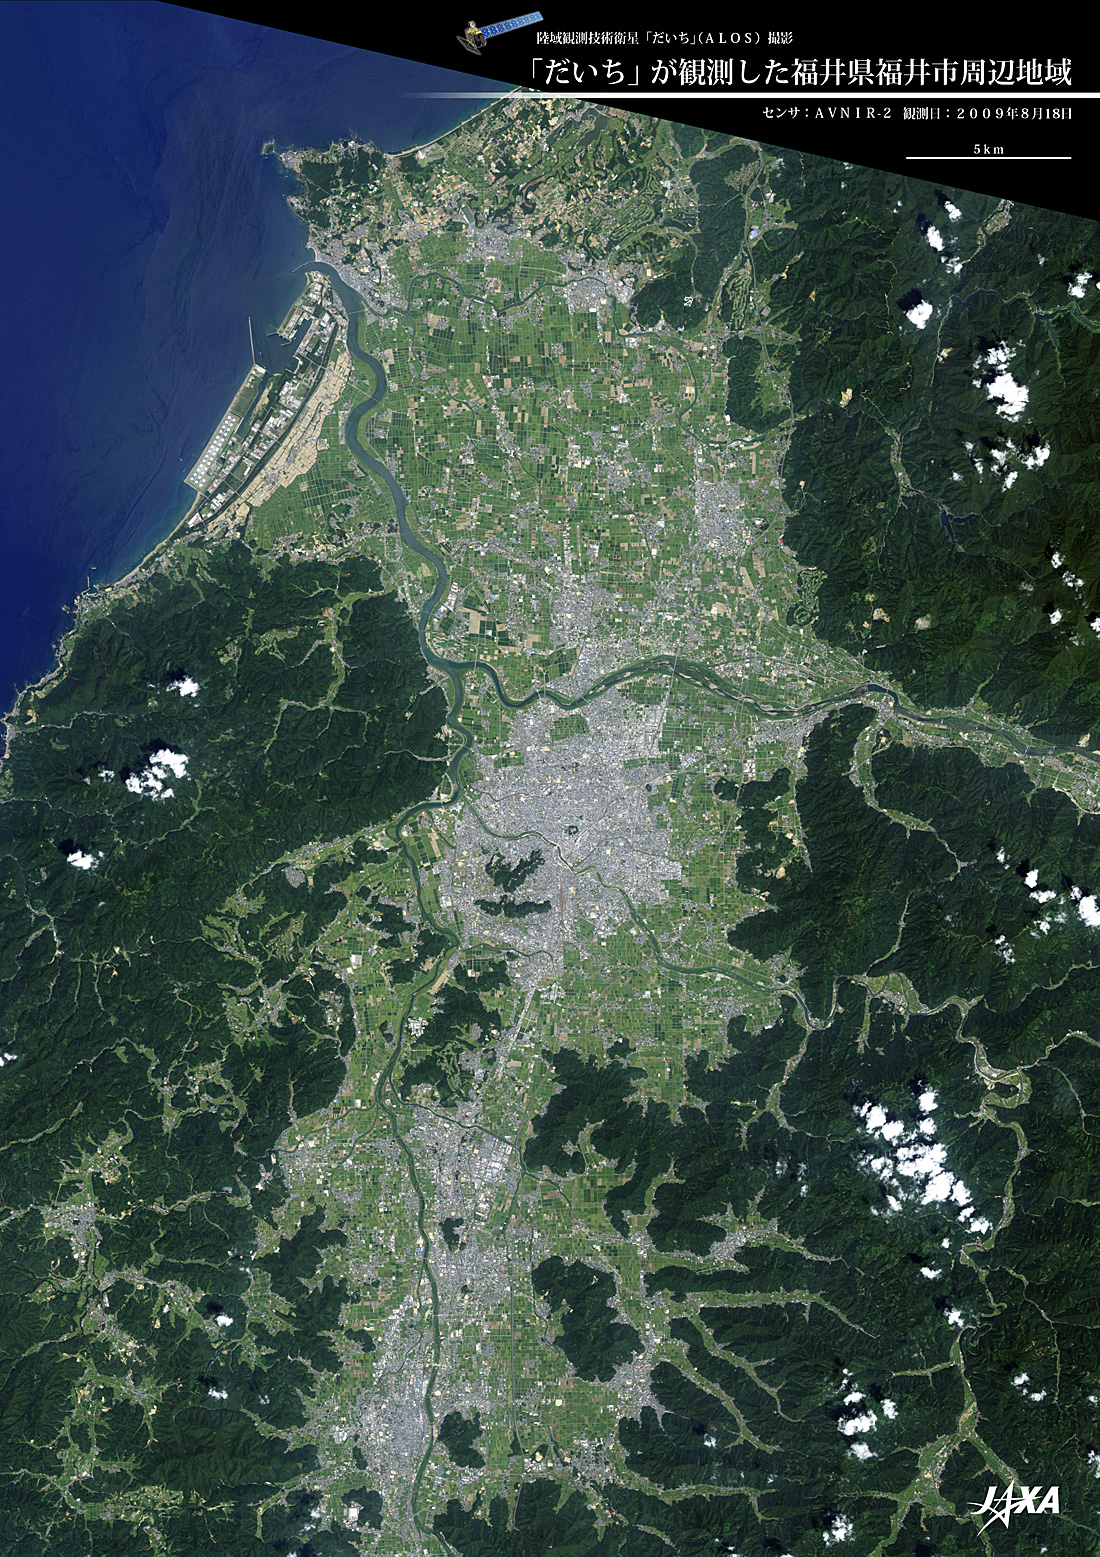 だいちから見た日本の都市 福井市周辺:衛星画像（ポスター仕上げ）